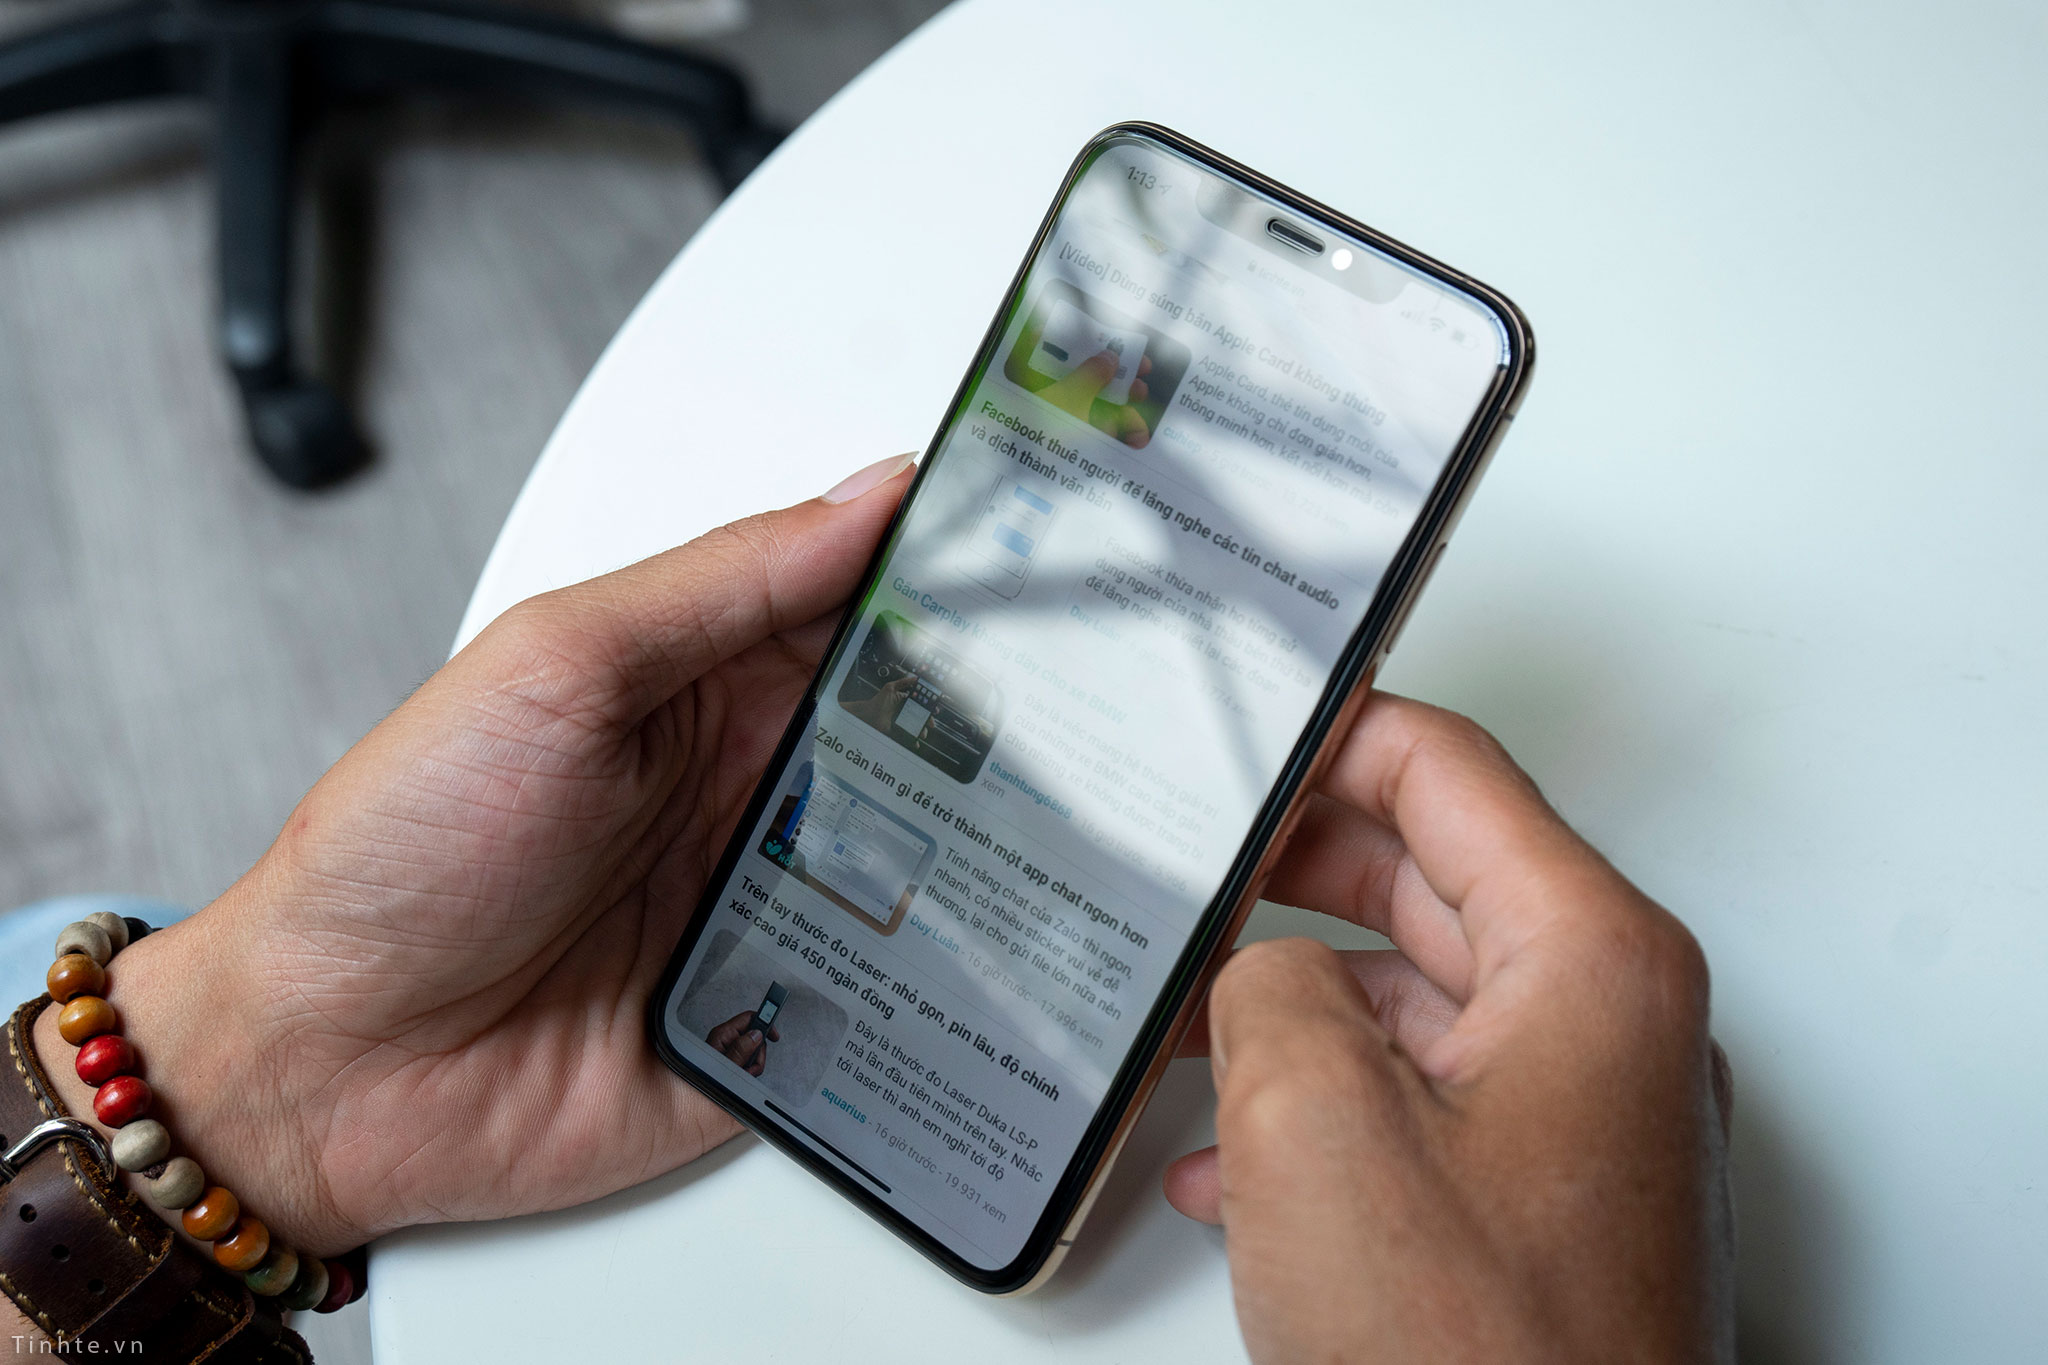 Apple đang nghiên cứu màn hình iPhone chống nhìn trộm, hoá ra mấy hãng làm tấm dán đã đúng?